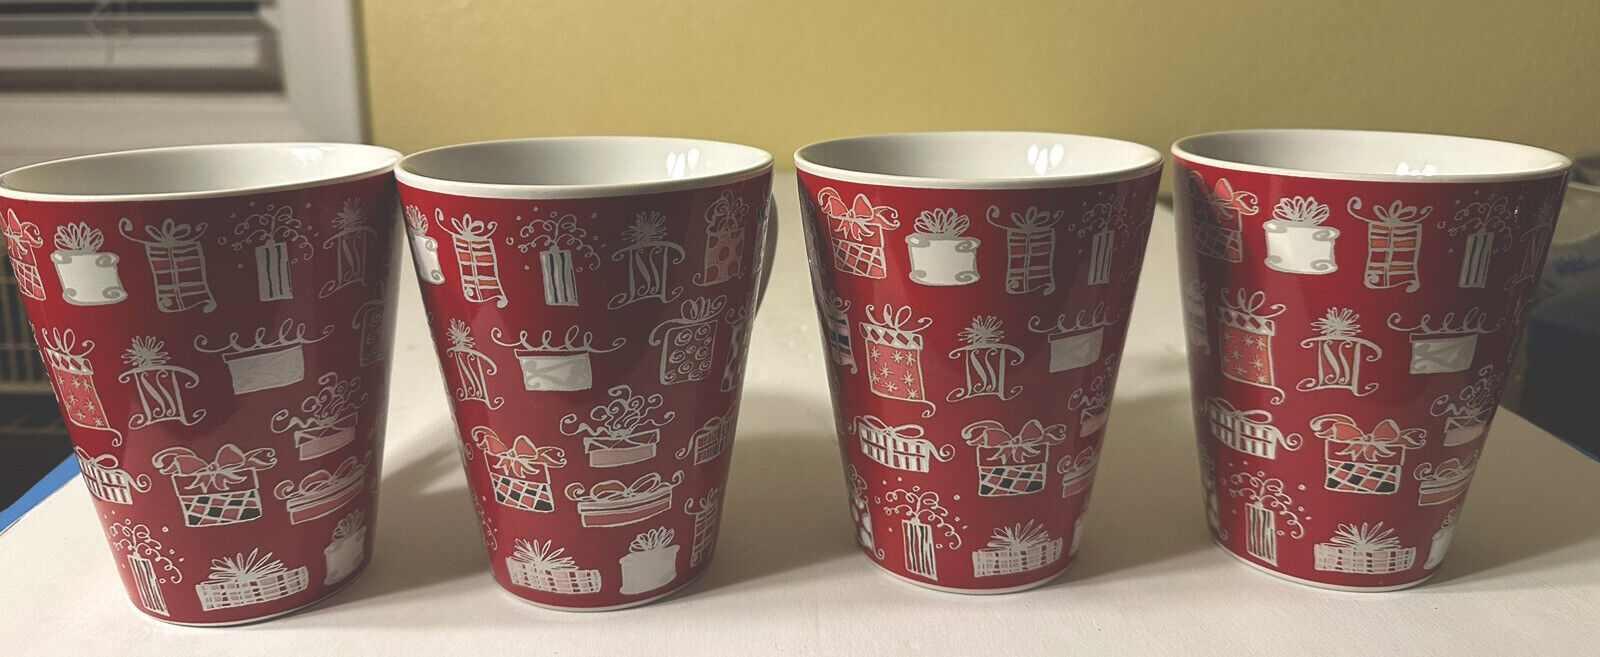 4 Starbucks Christmas Coffee Tea Mug Cup Tall Red Pink Presents Gifts 14 oz.